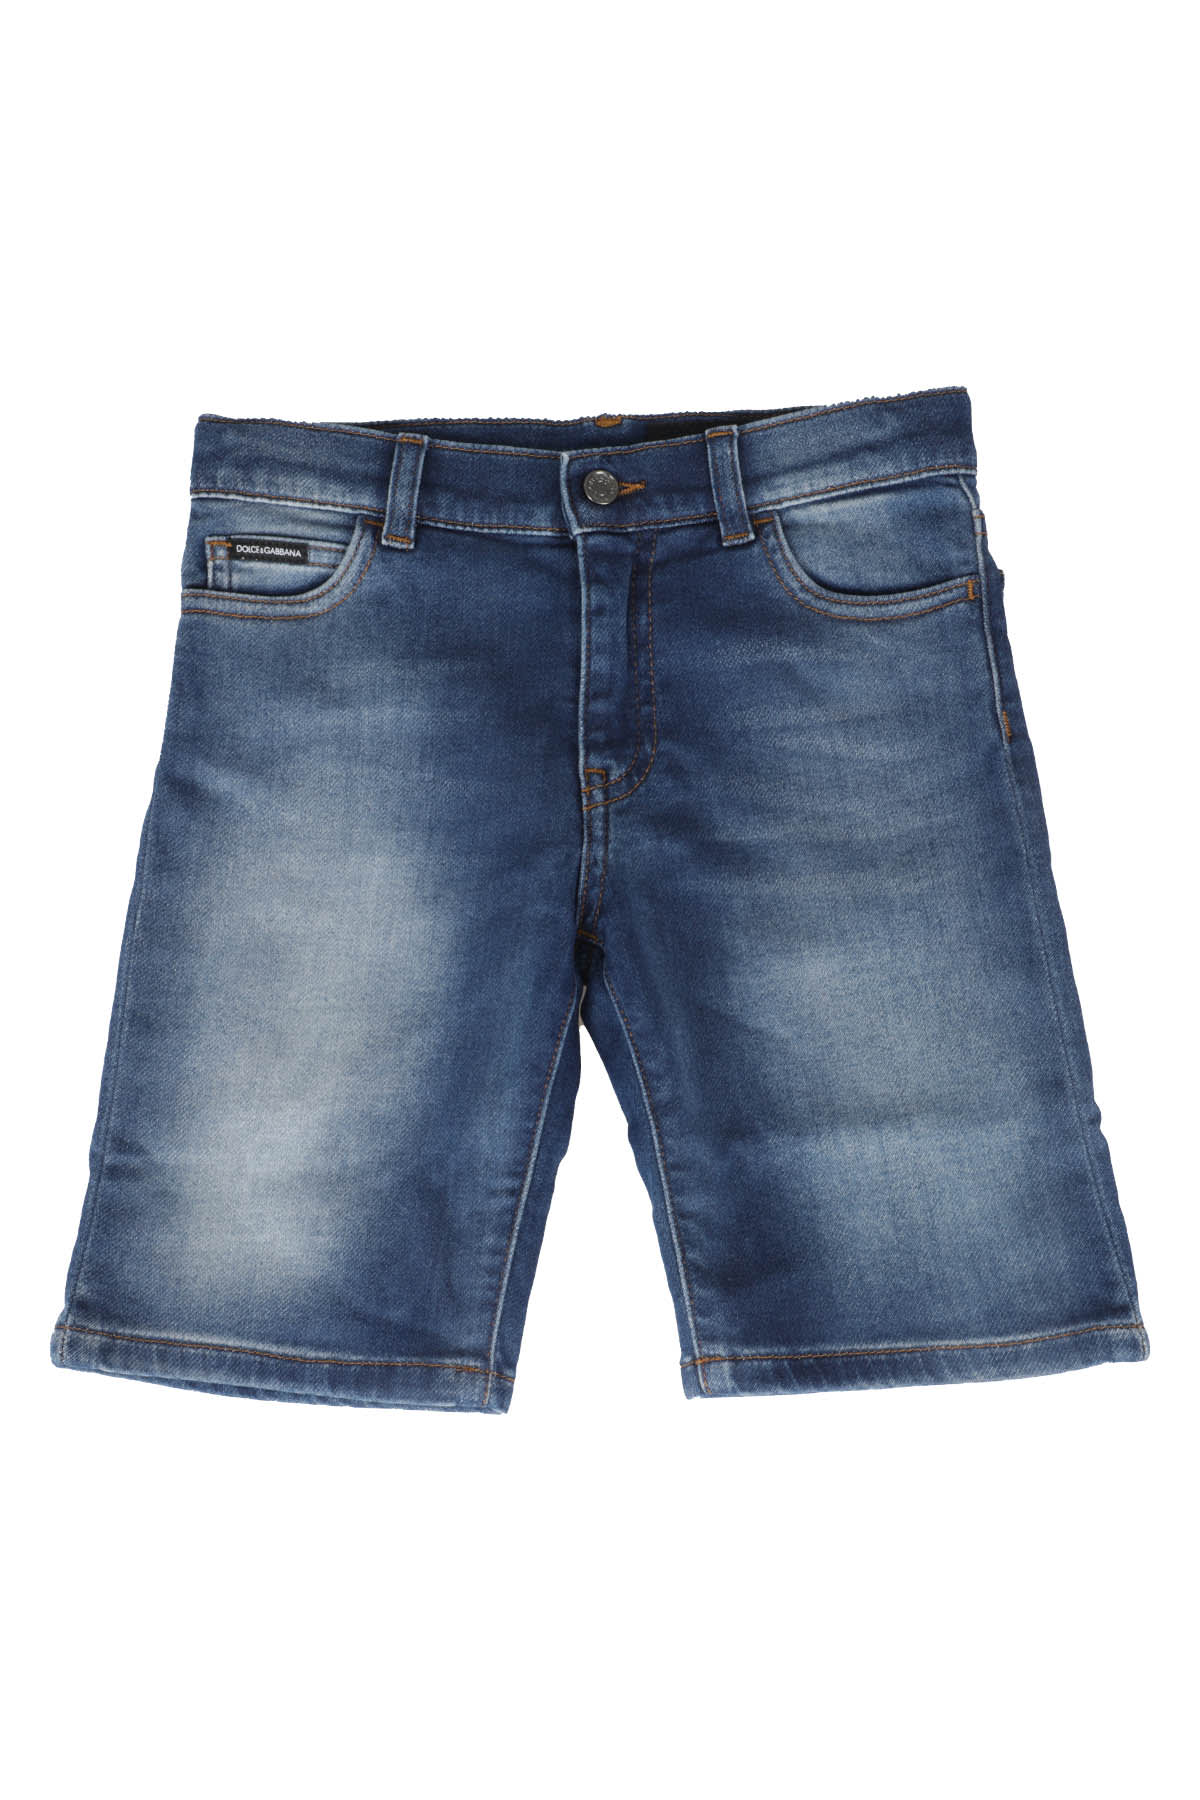 Dolce & Gabbana Kids' Jeans In Blu Scuro